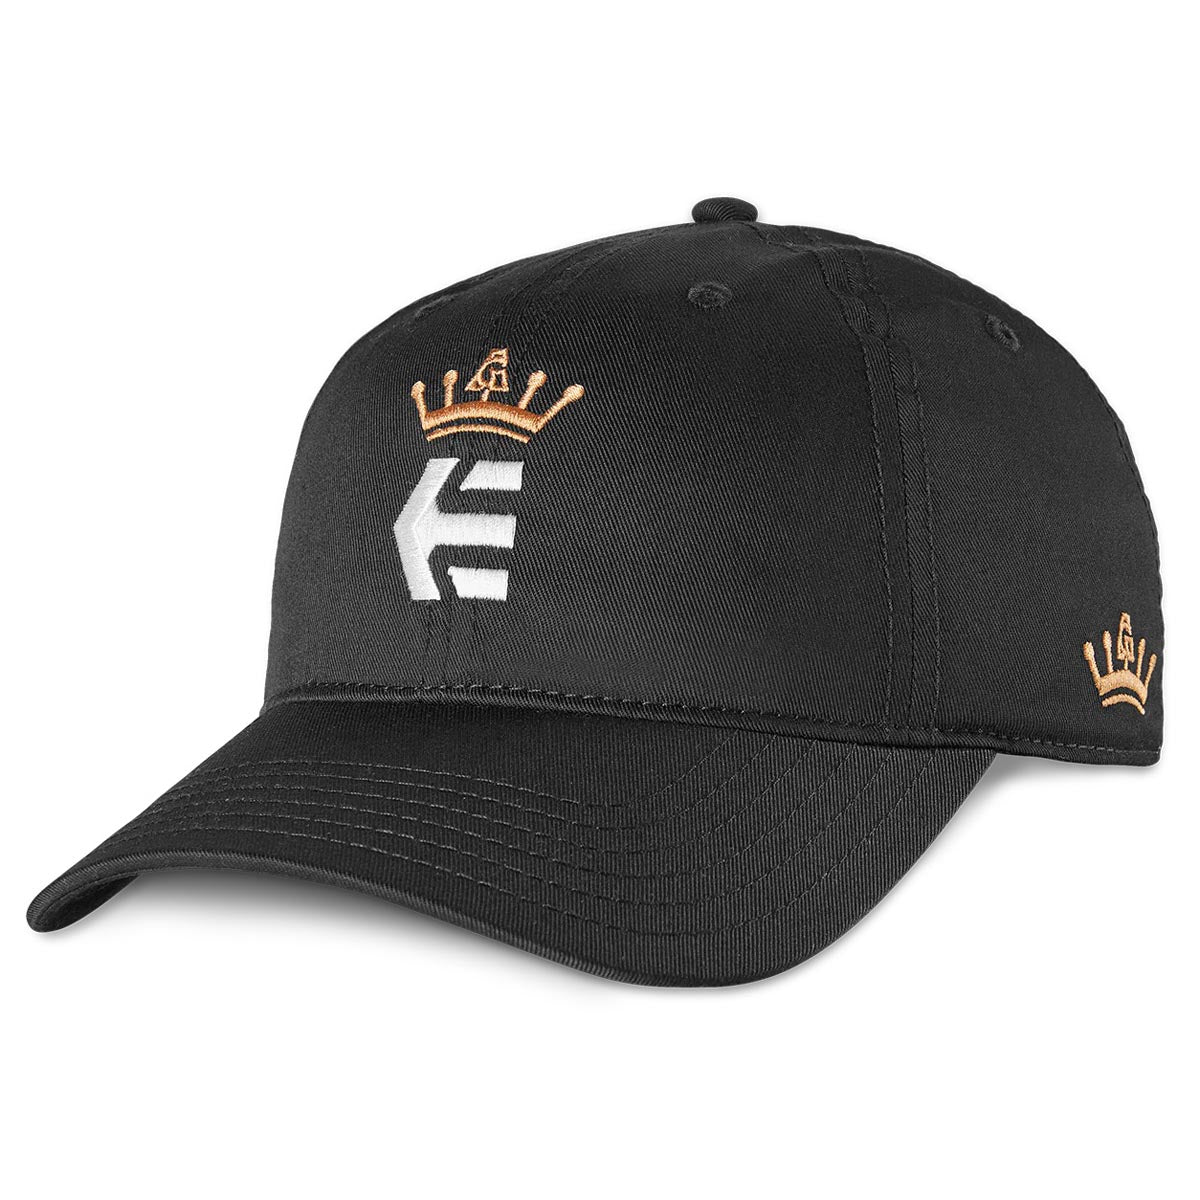 Etnies AG Snapback Hat - Black image 1